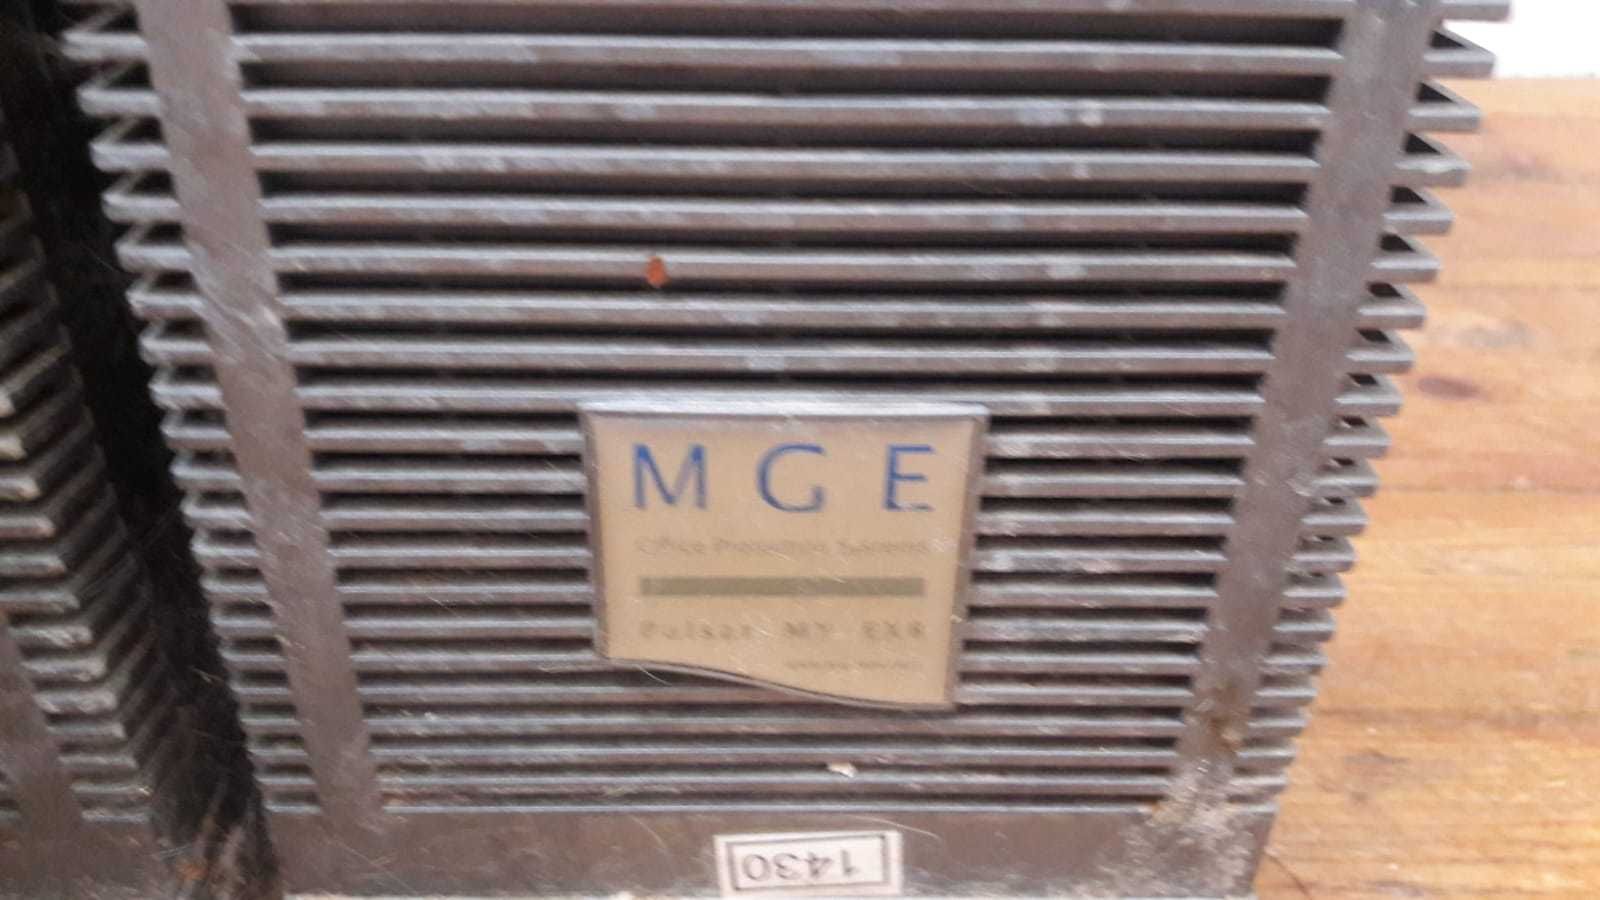 Блок питания MGE UPS Systems 5000 RT